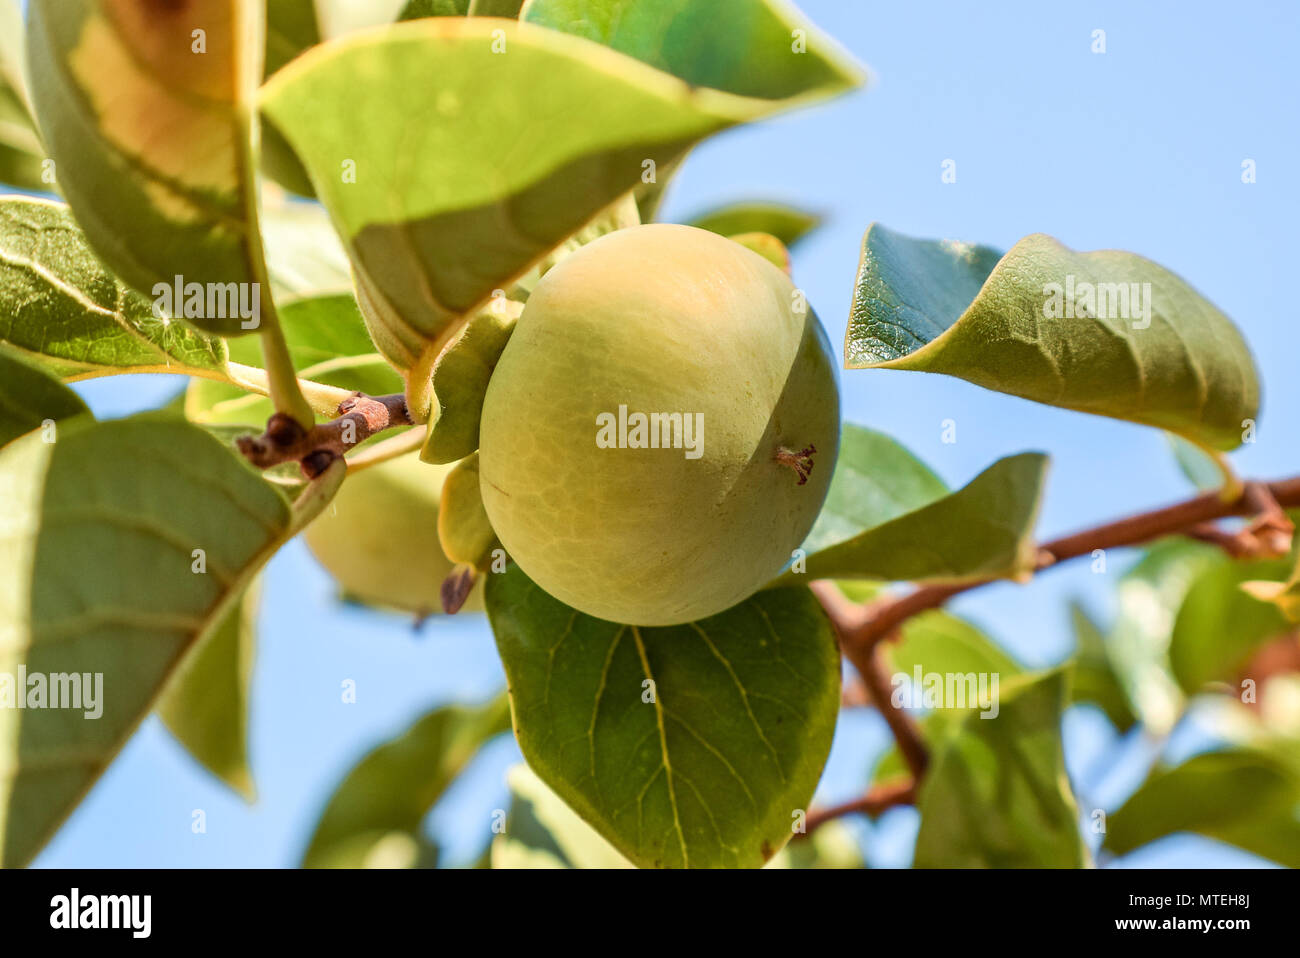 La fruta inmadura con hojas verdes en el árbol, natural, cerca de imagen de fondo Foto de stock